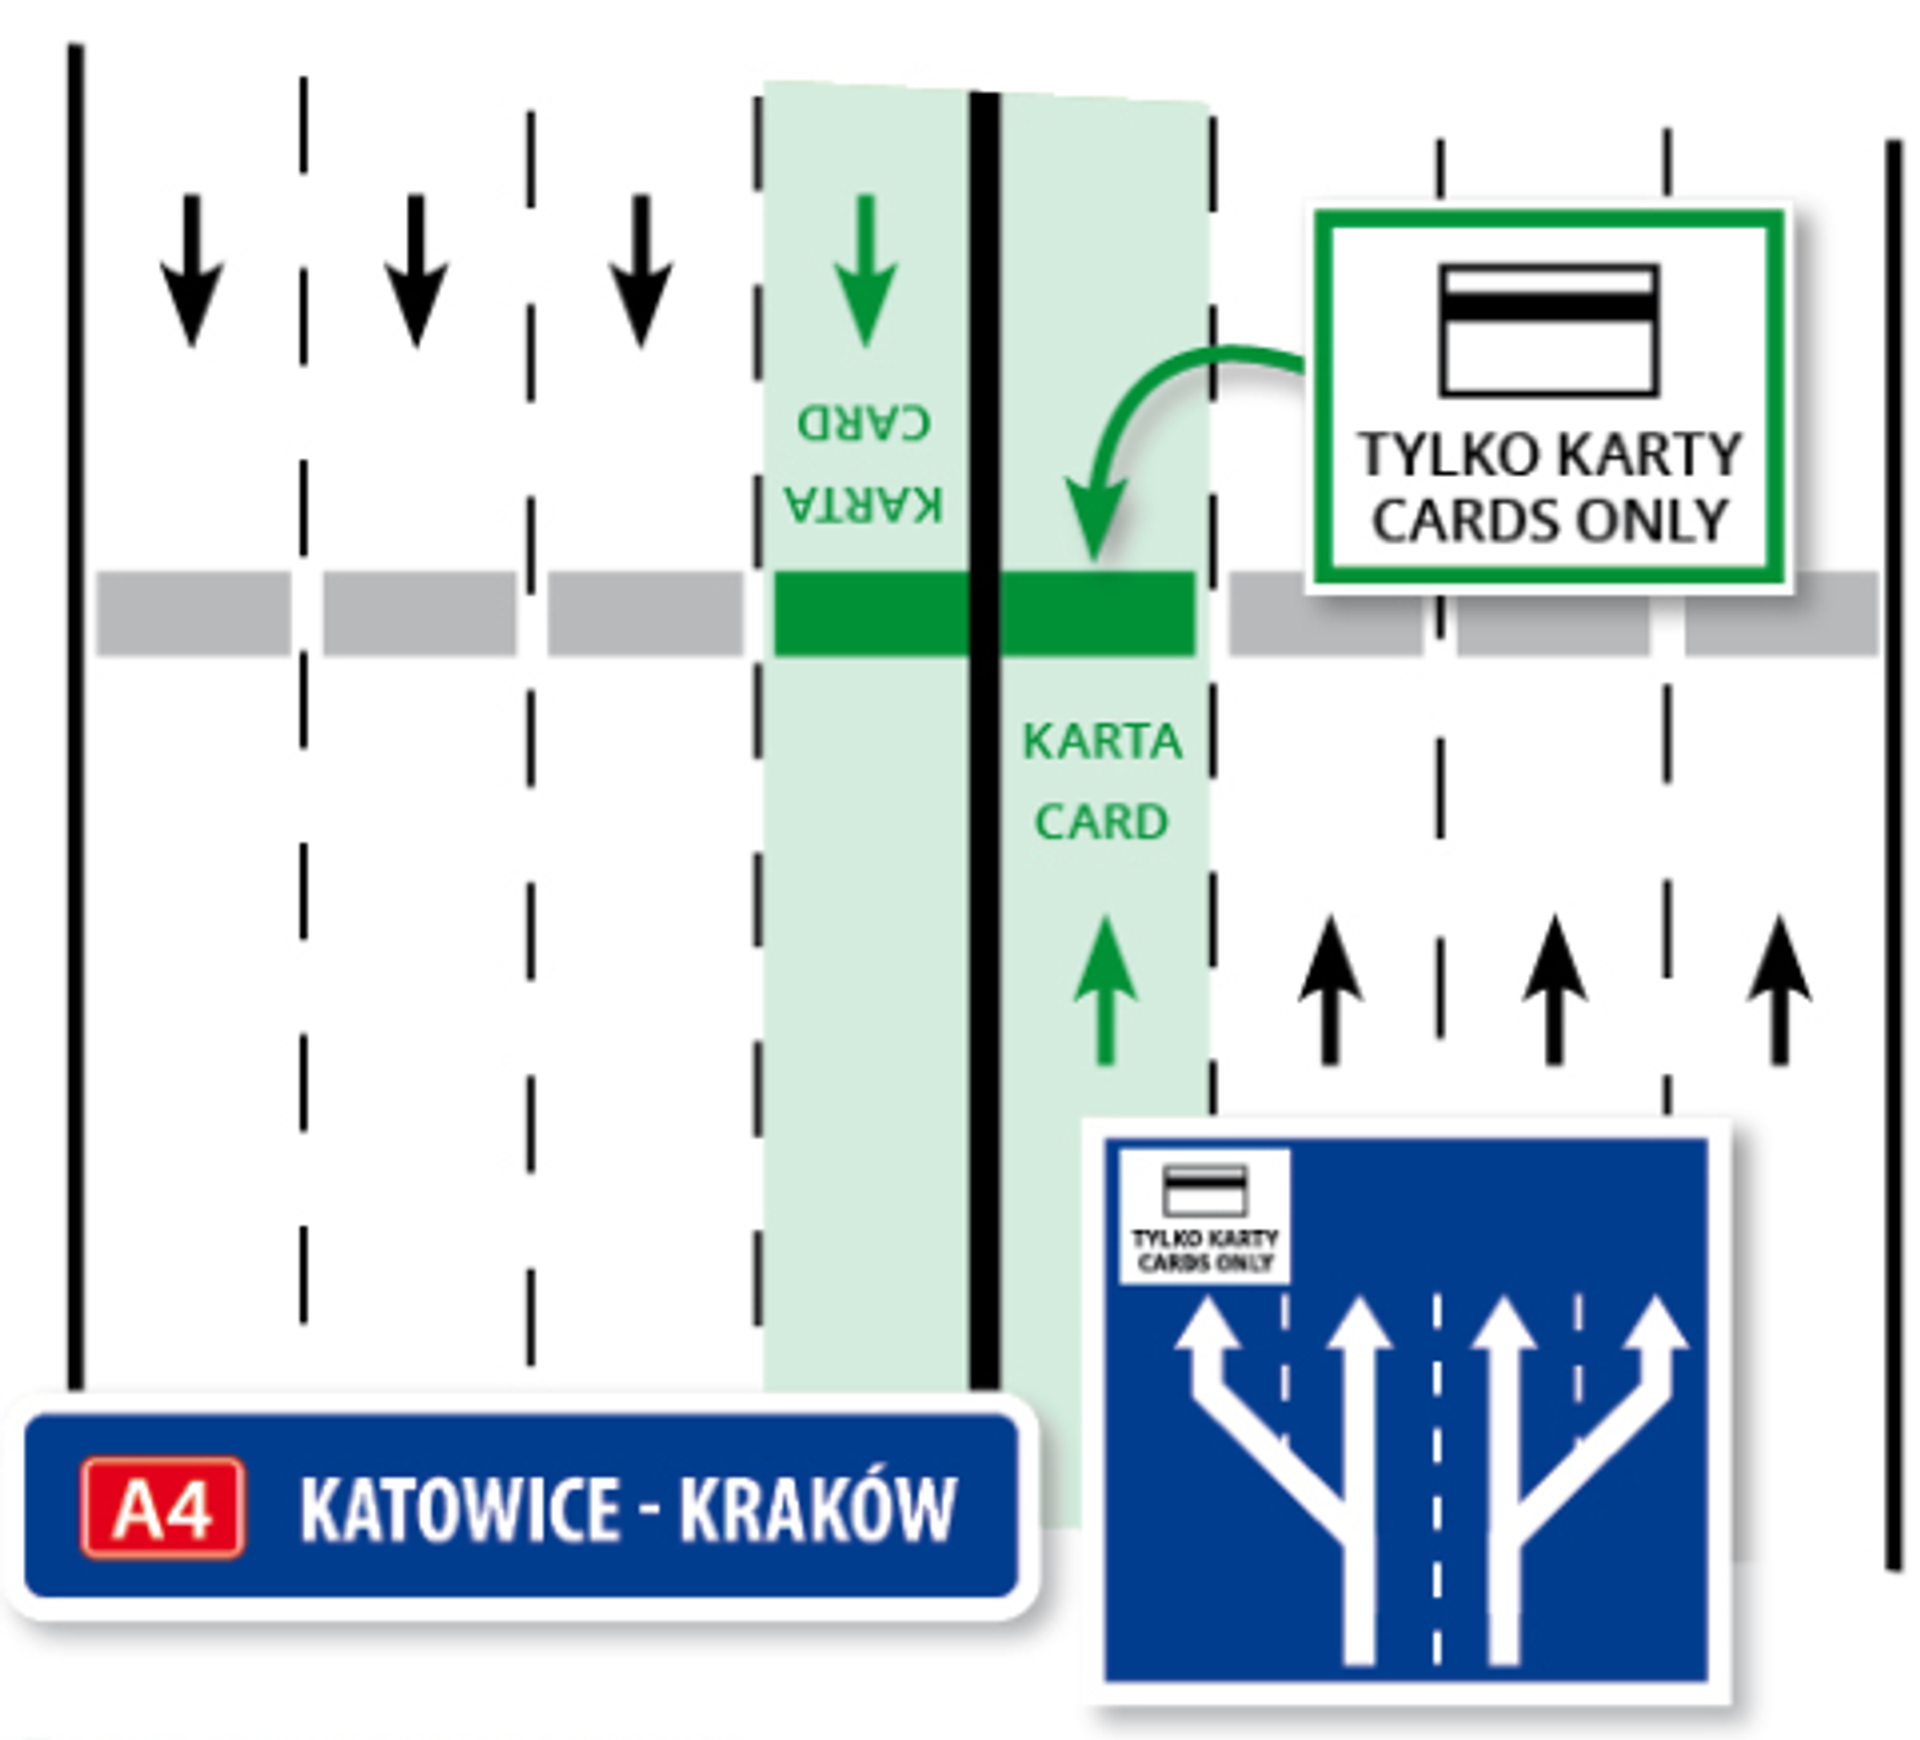  Stalexport Autostrada Małopolska S.A. uruchomiła bramki samoobsługowe na Placach Poboru Opłat w Mysłowicach i Balicach